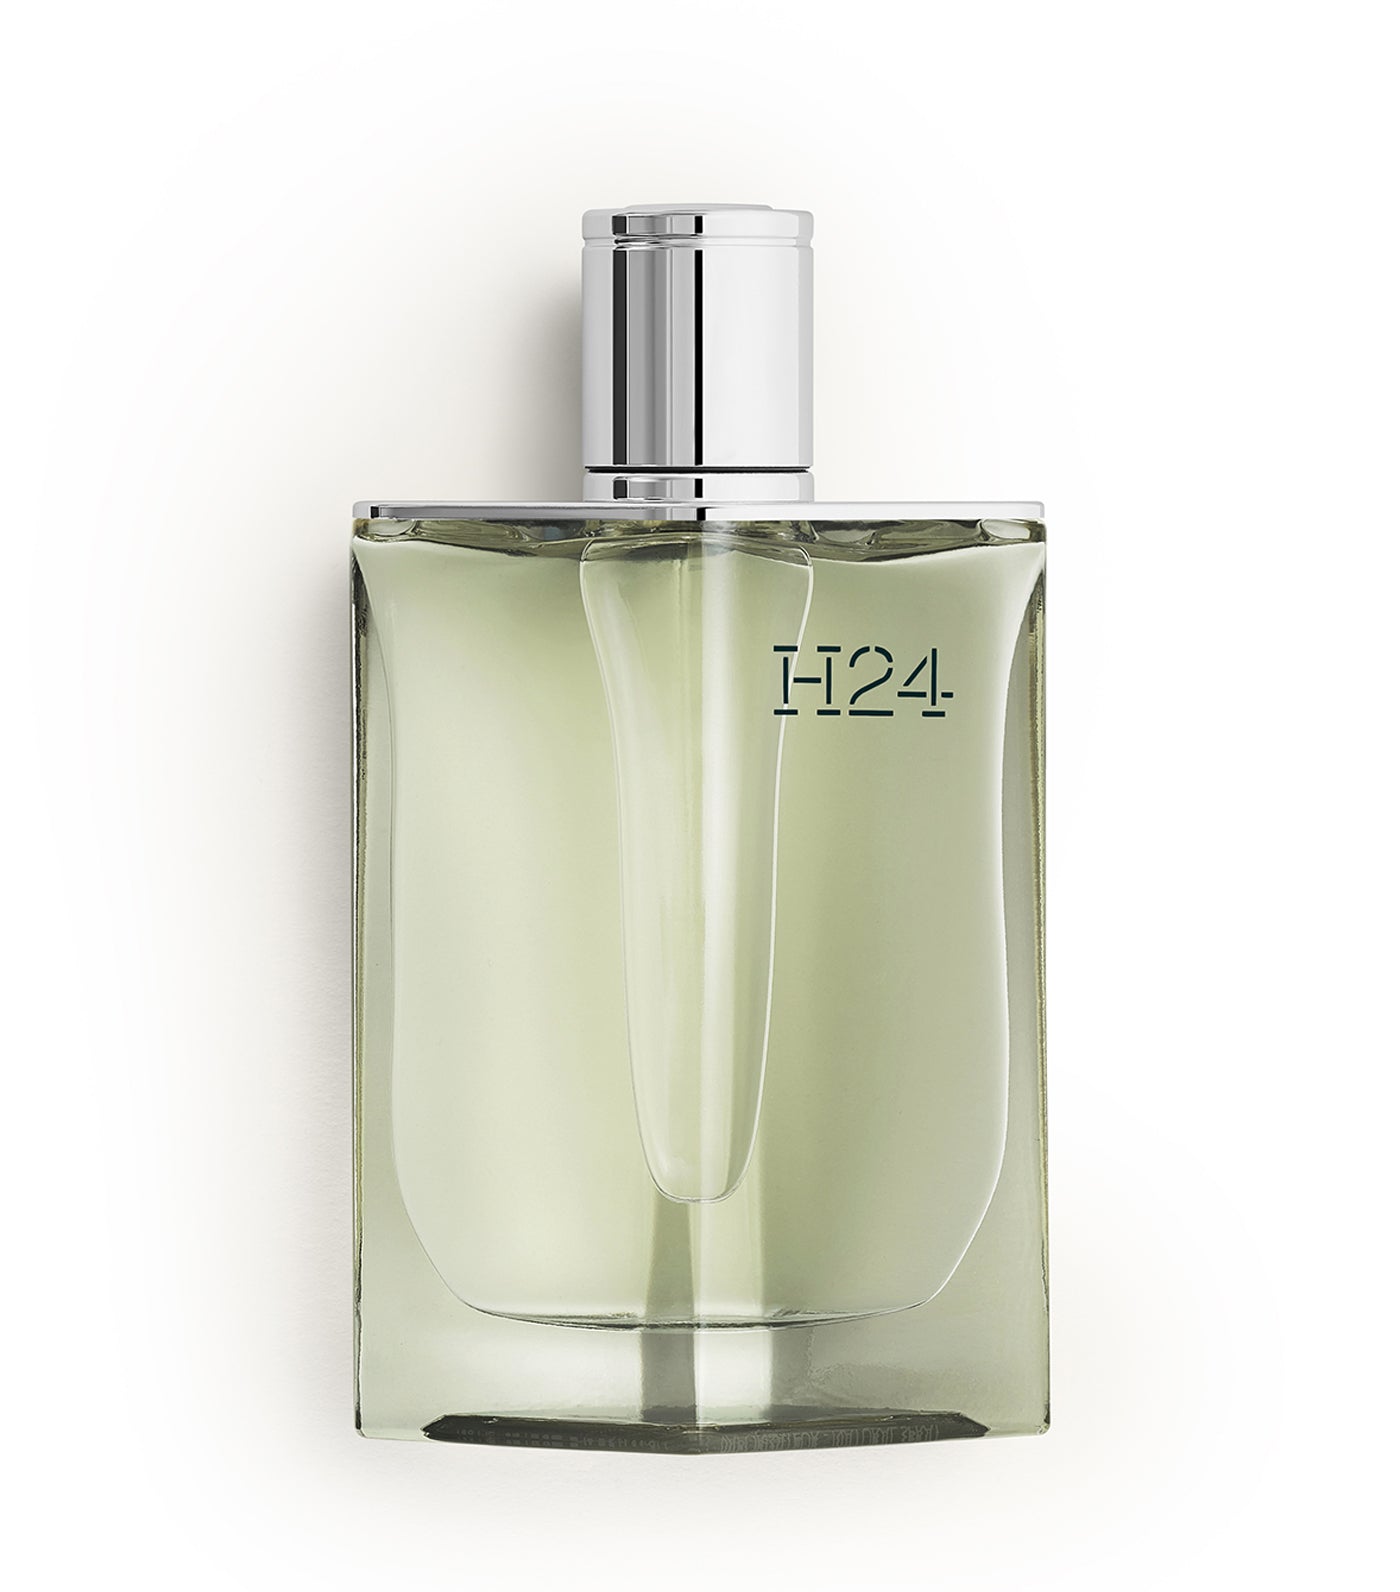 H24, Eau de Parfum